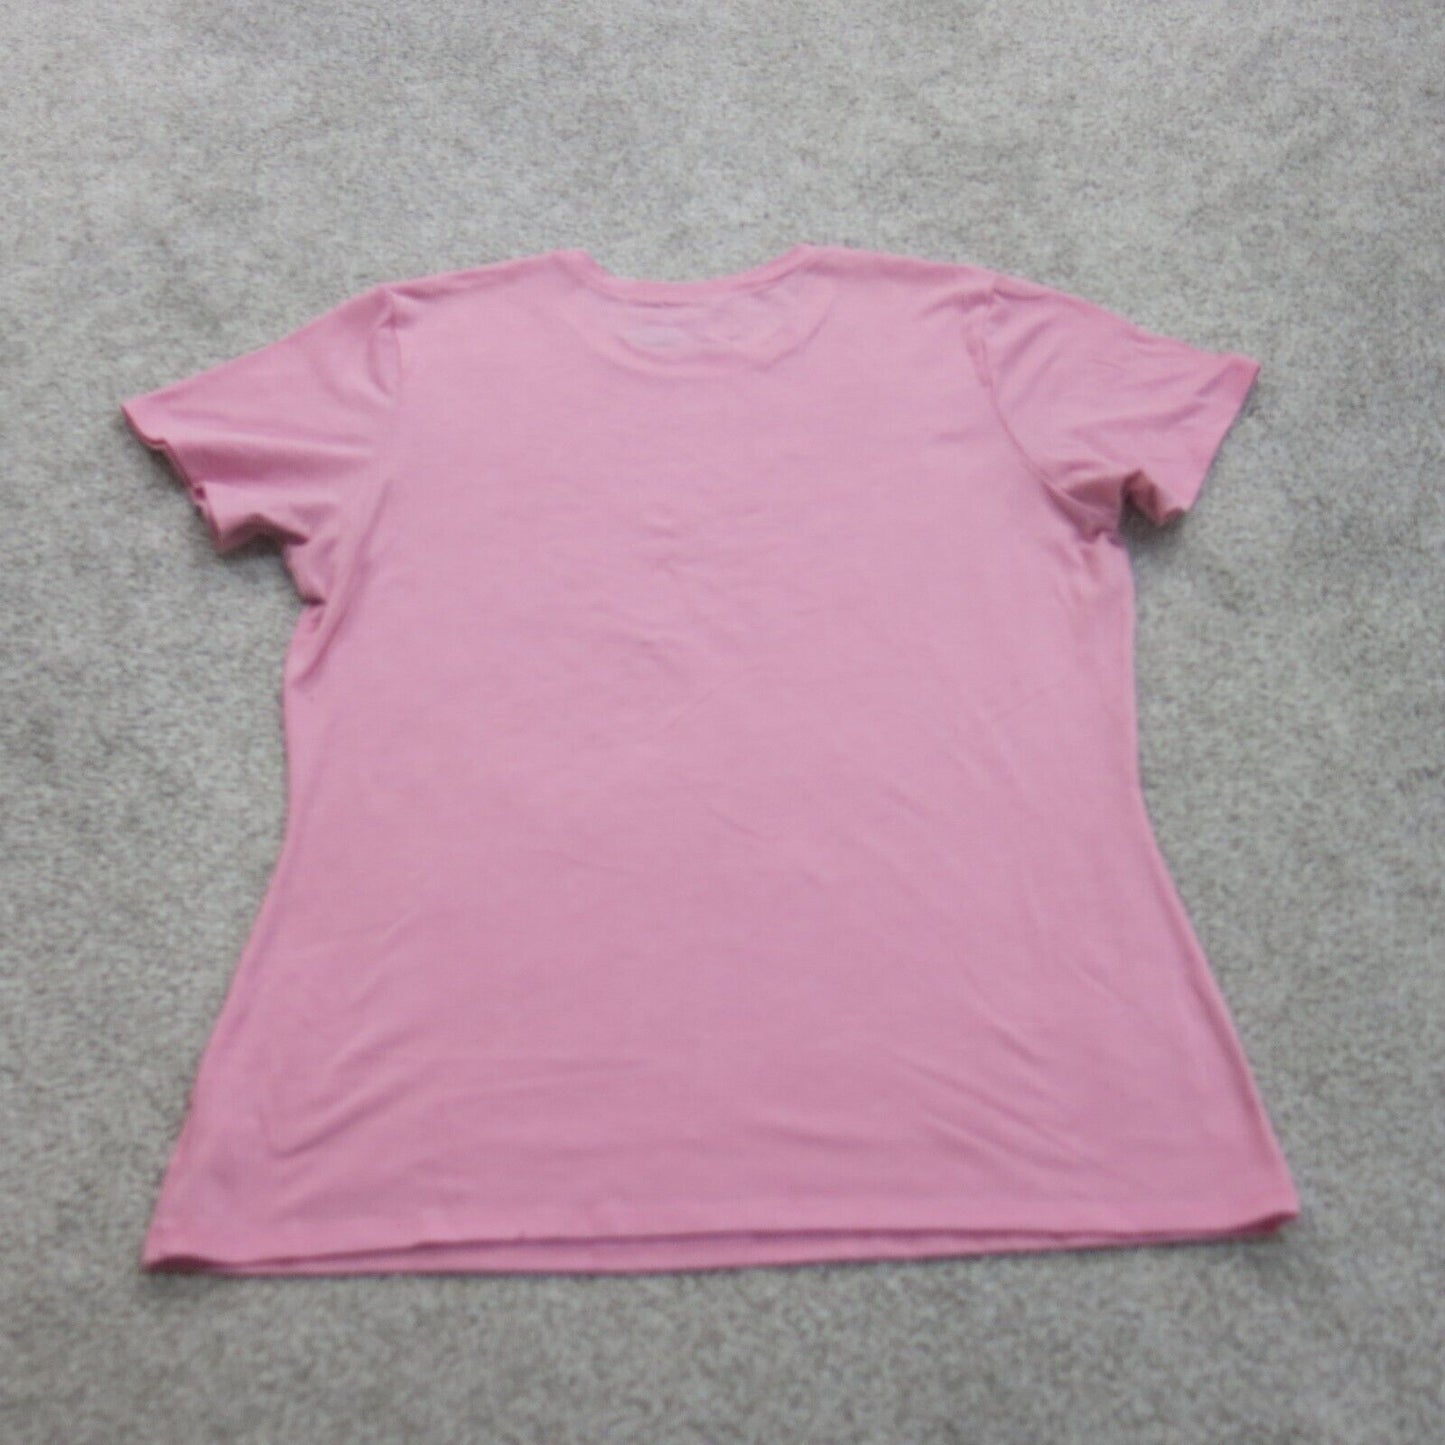 Under Armour Womens T Shirt Top Heatgear Short Sleeves Crew Neck Pink SZ Medium